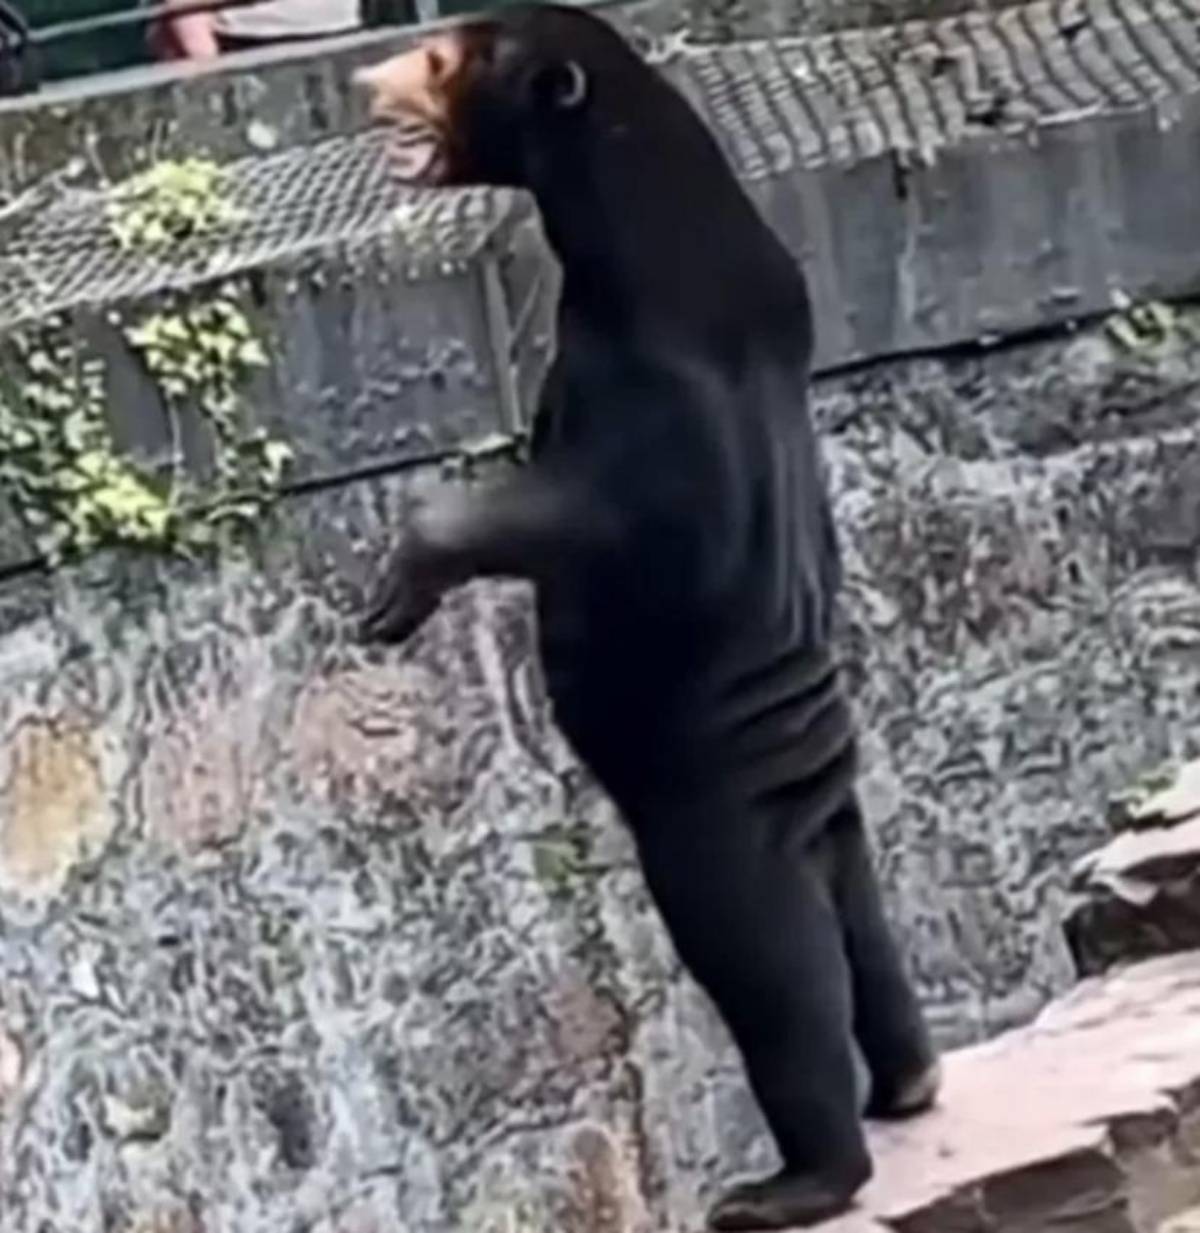 Ένα στιγμιότυπο από το βίντεο που έγινε viral, με τους χρήστες στα social media να εστιάζουν στα λεπτά πόδια της αρκούδας και στο χαλαρό δέρμα και τις πτυχώσεις του. Μερικοί σχολίασαν ότι η αρκούδα «φαίνεται να φοράει παπούτσια» (Photo: Hangzhou Zoo/Twitter)